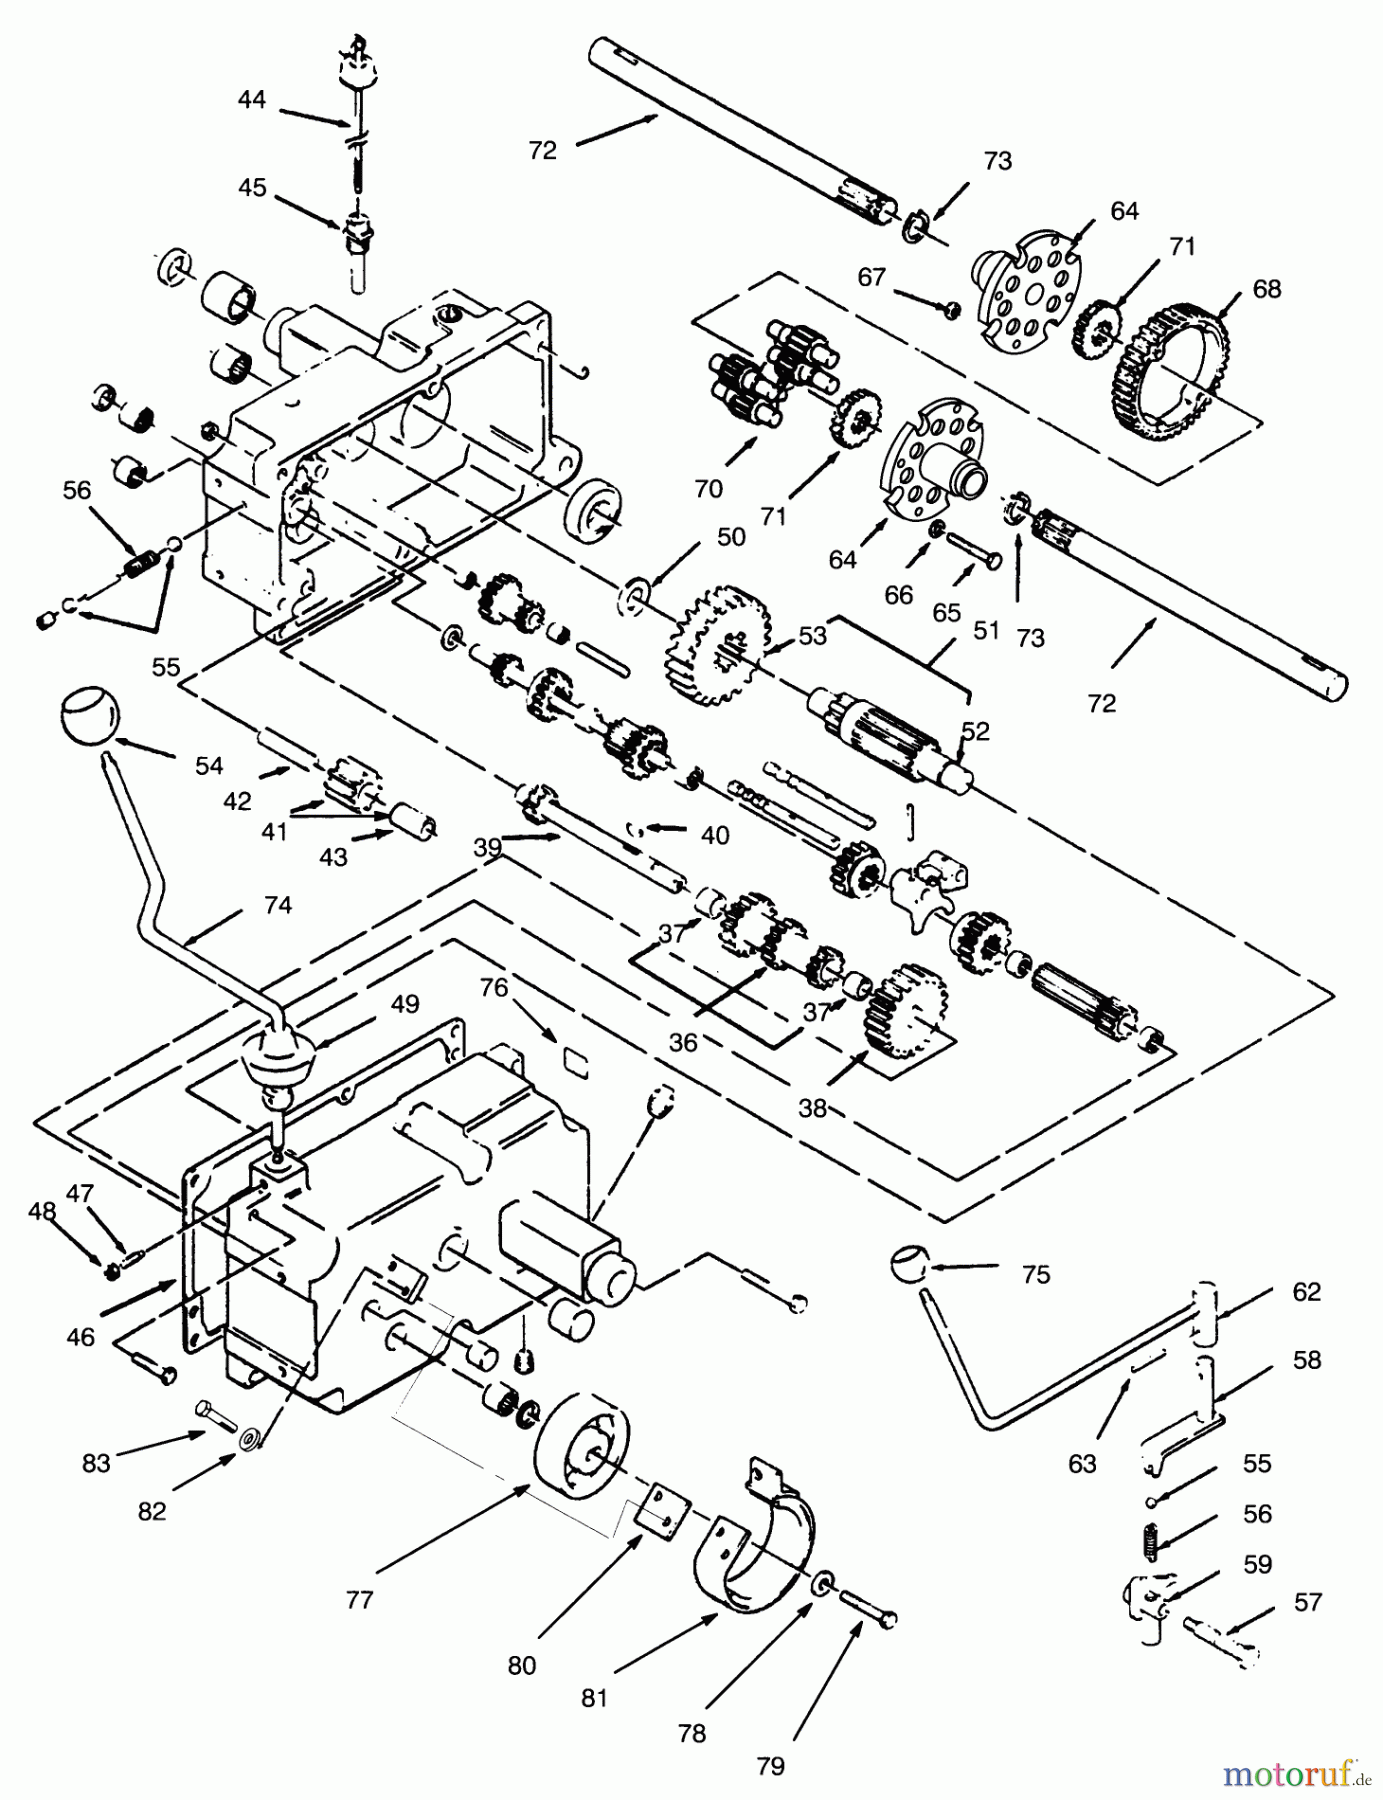  Toro Neu Mowers, Lawn & Garden Tractor Seite 1 73400 (314-8) - Toro 314-8 Garden Tractor, 1996 (SN 6900001-6999999) TRANSMISSION 8-SPEED #2